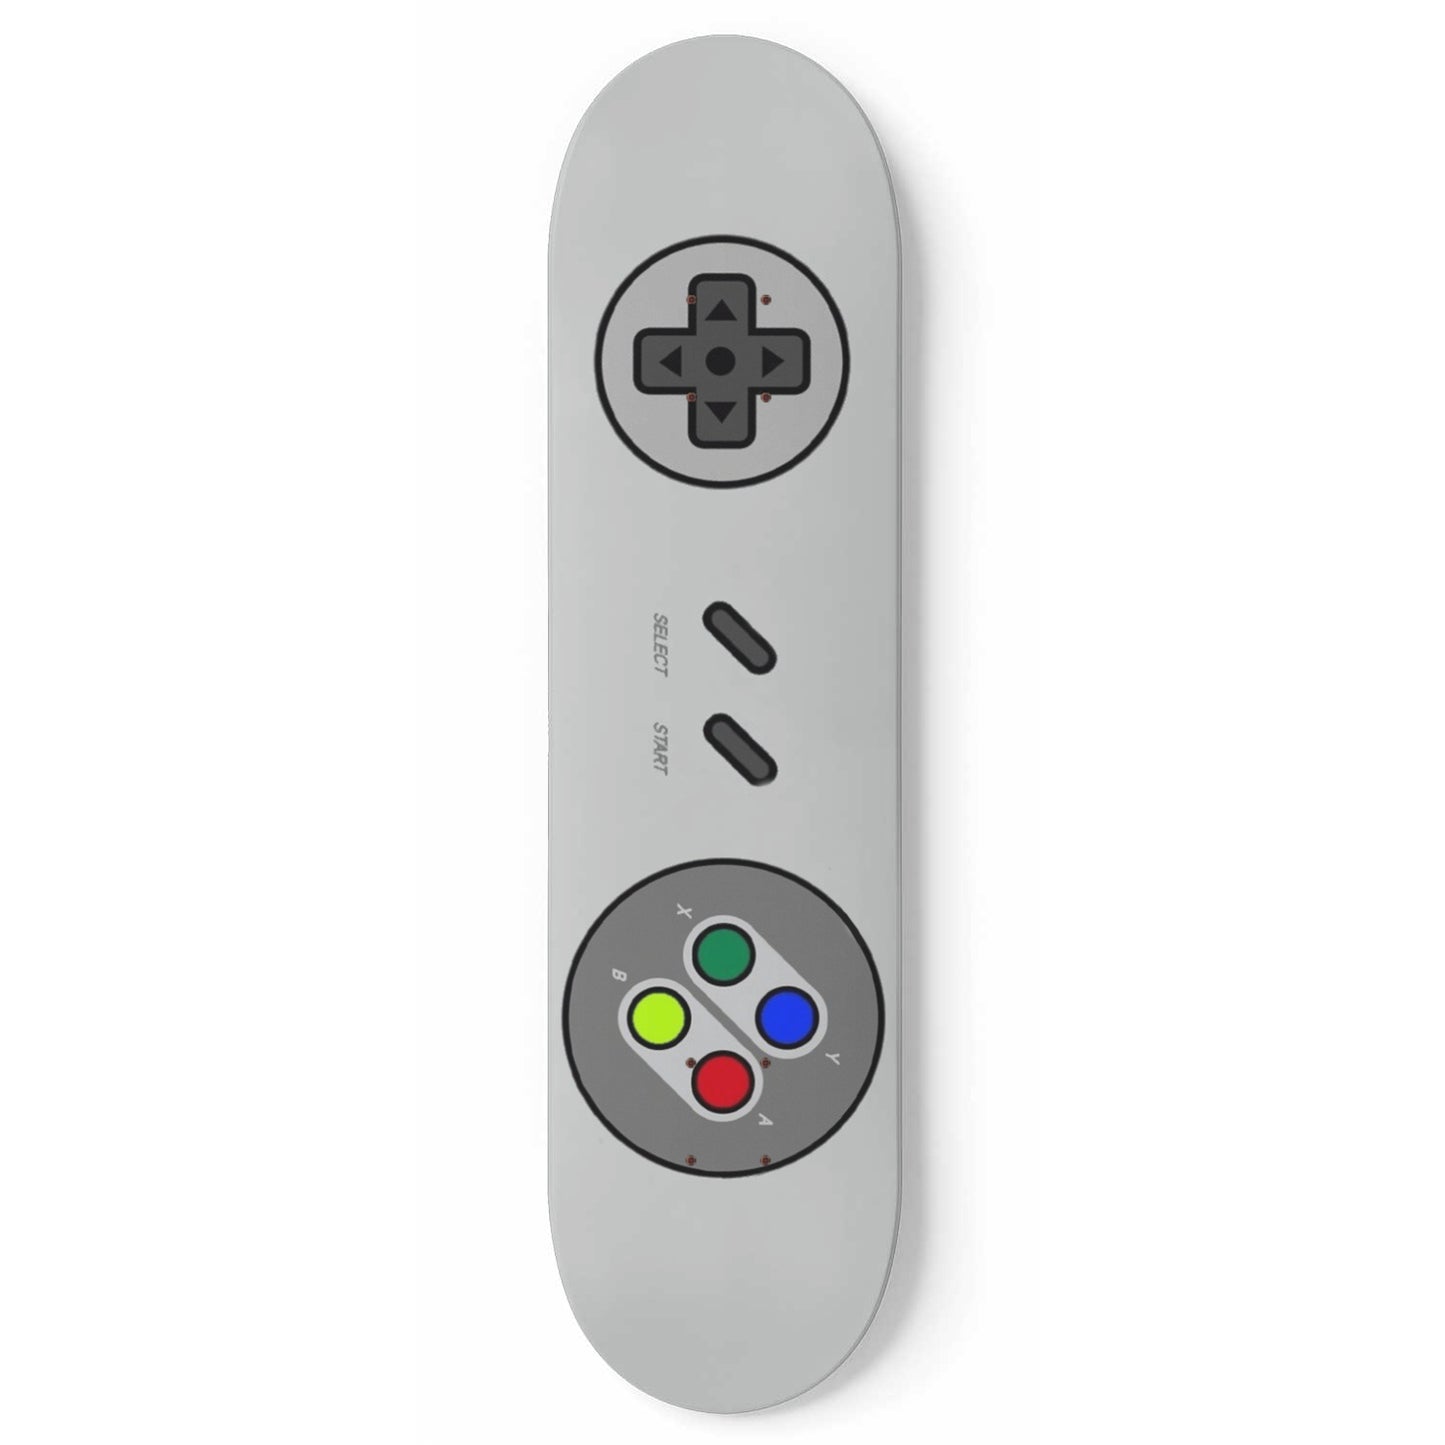 Nintendo Game Controller #1.0.1